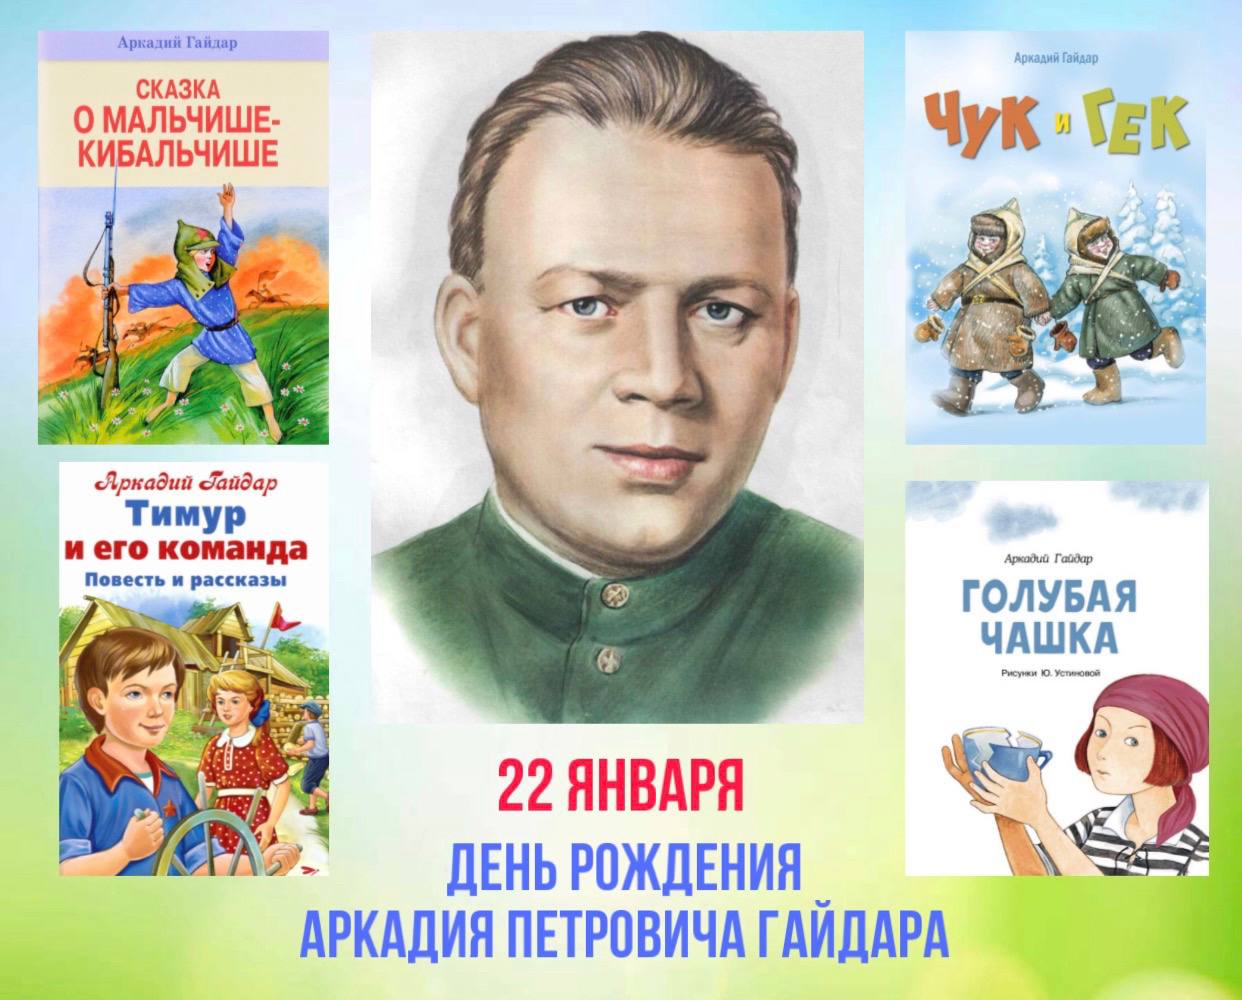 120 лет со дня рождения советского детского писателя Аркадия Гайдара.